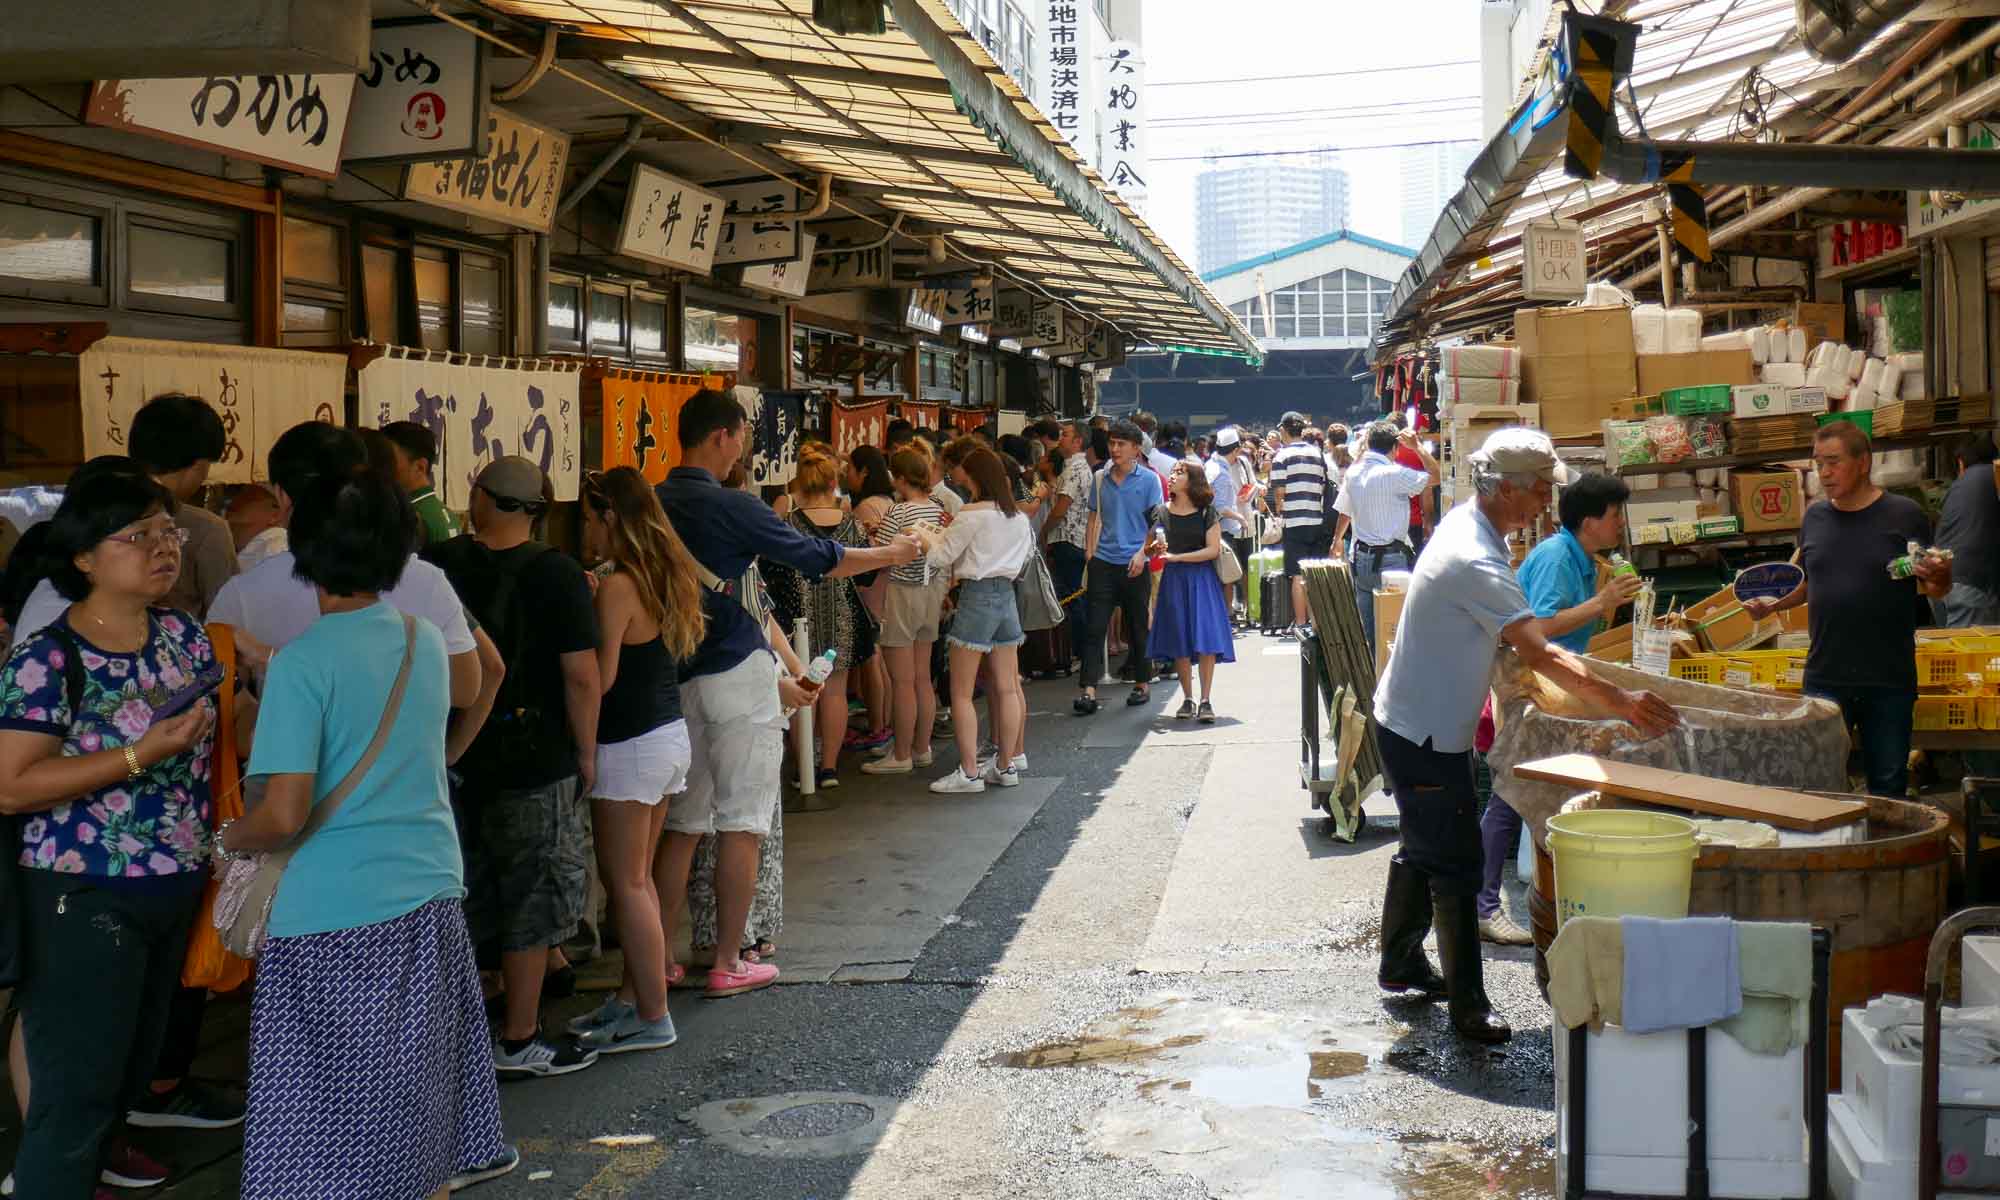 People waiting to be seated at sushi restaurants at the Tsukiji Fish Market